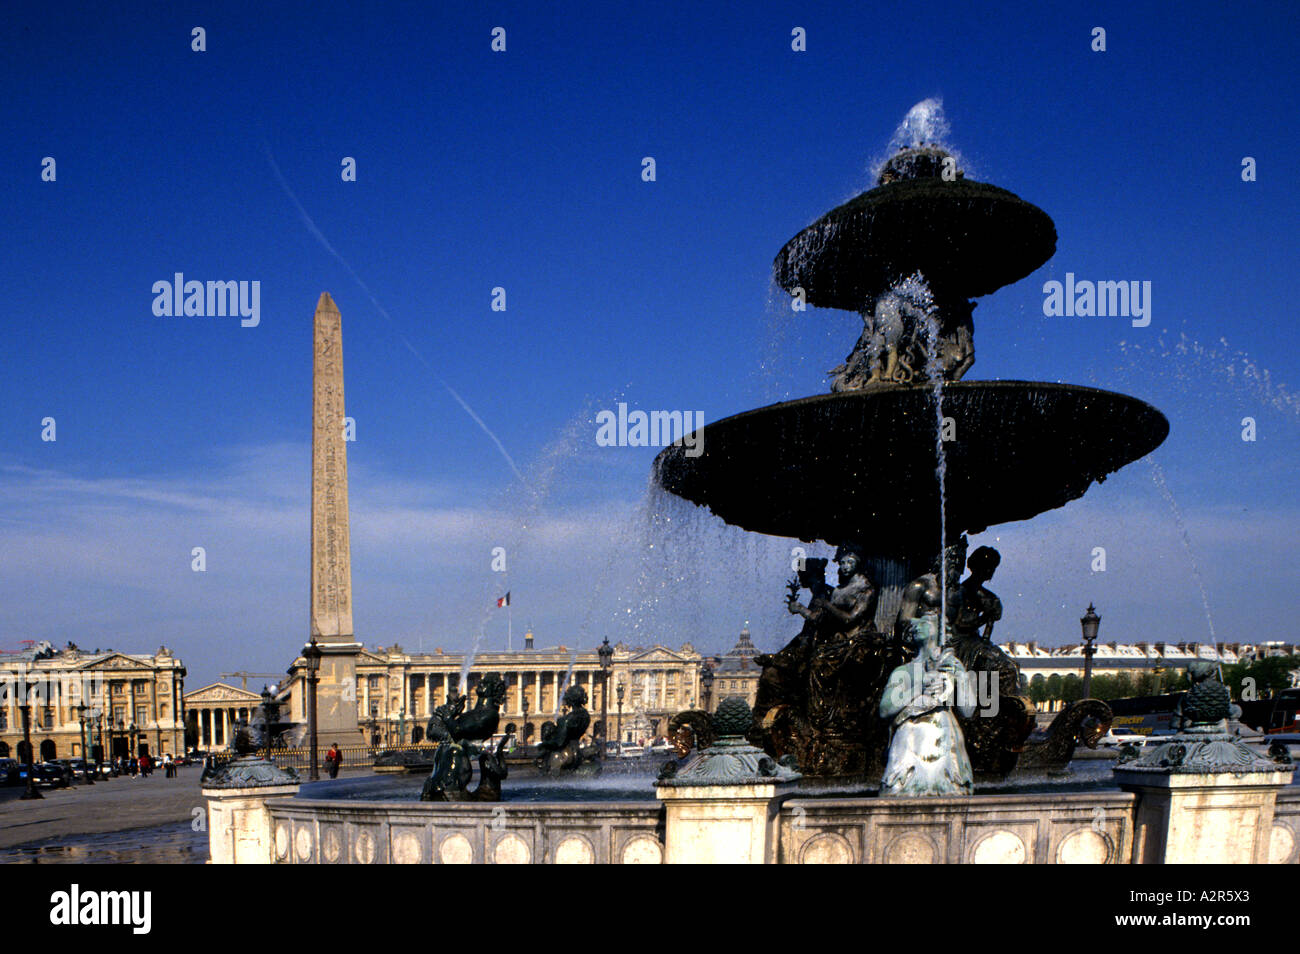 Fountain in the Place de la Concorde Paris France fountain water Parisian Stock Photo